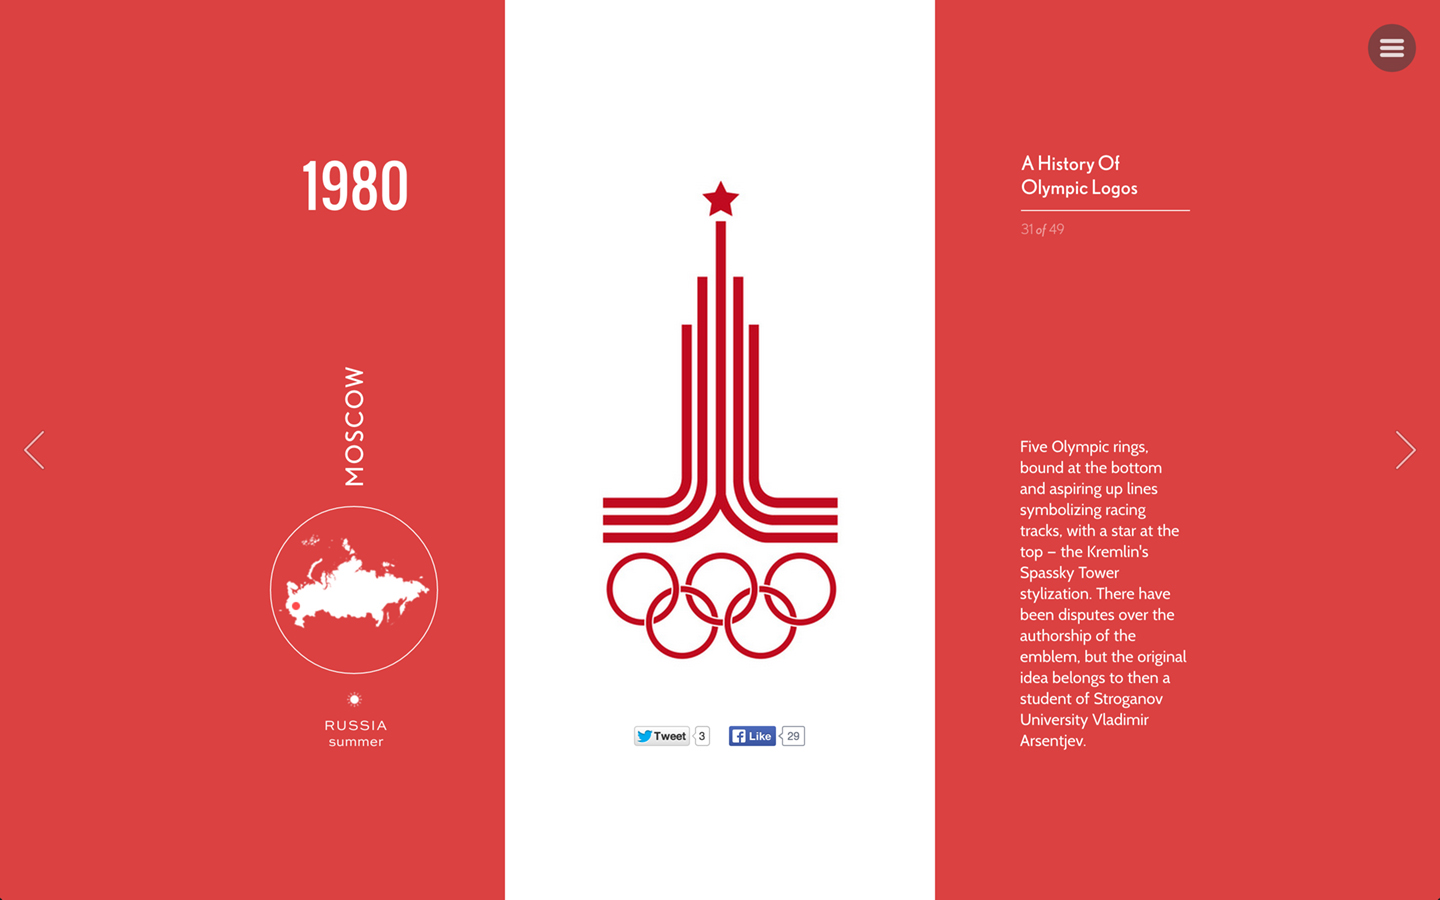 olympics-1980-moscow.jpg